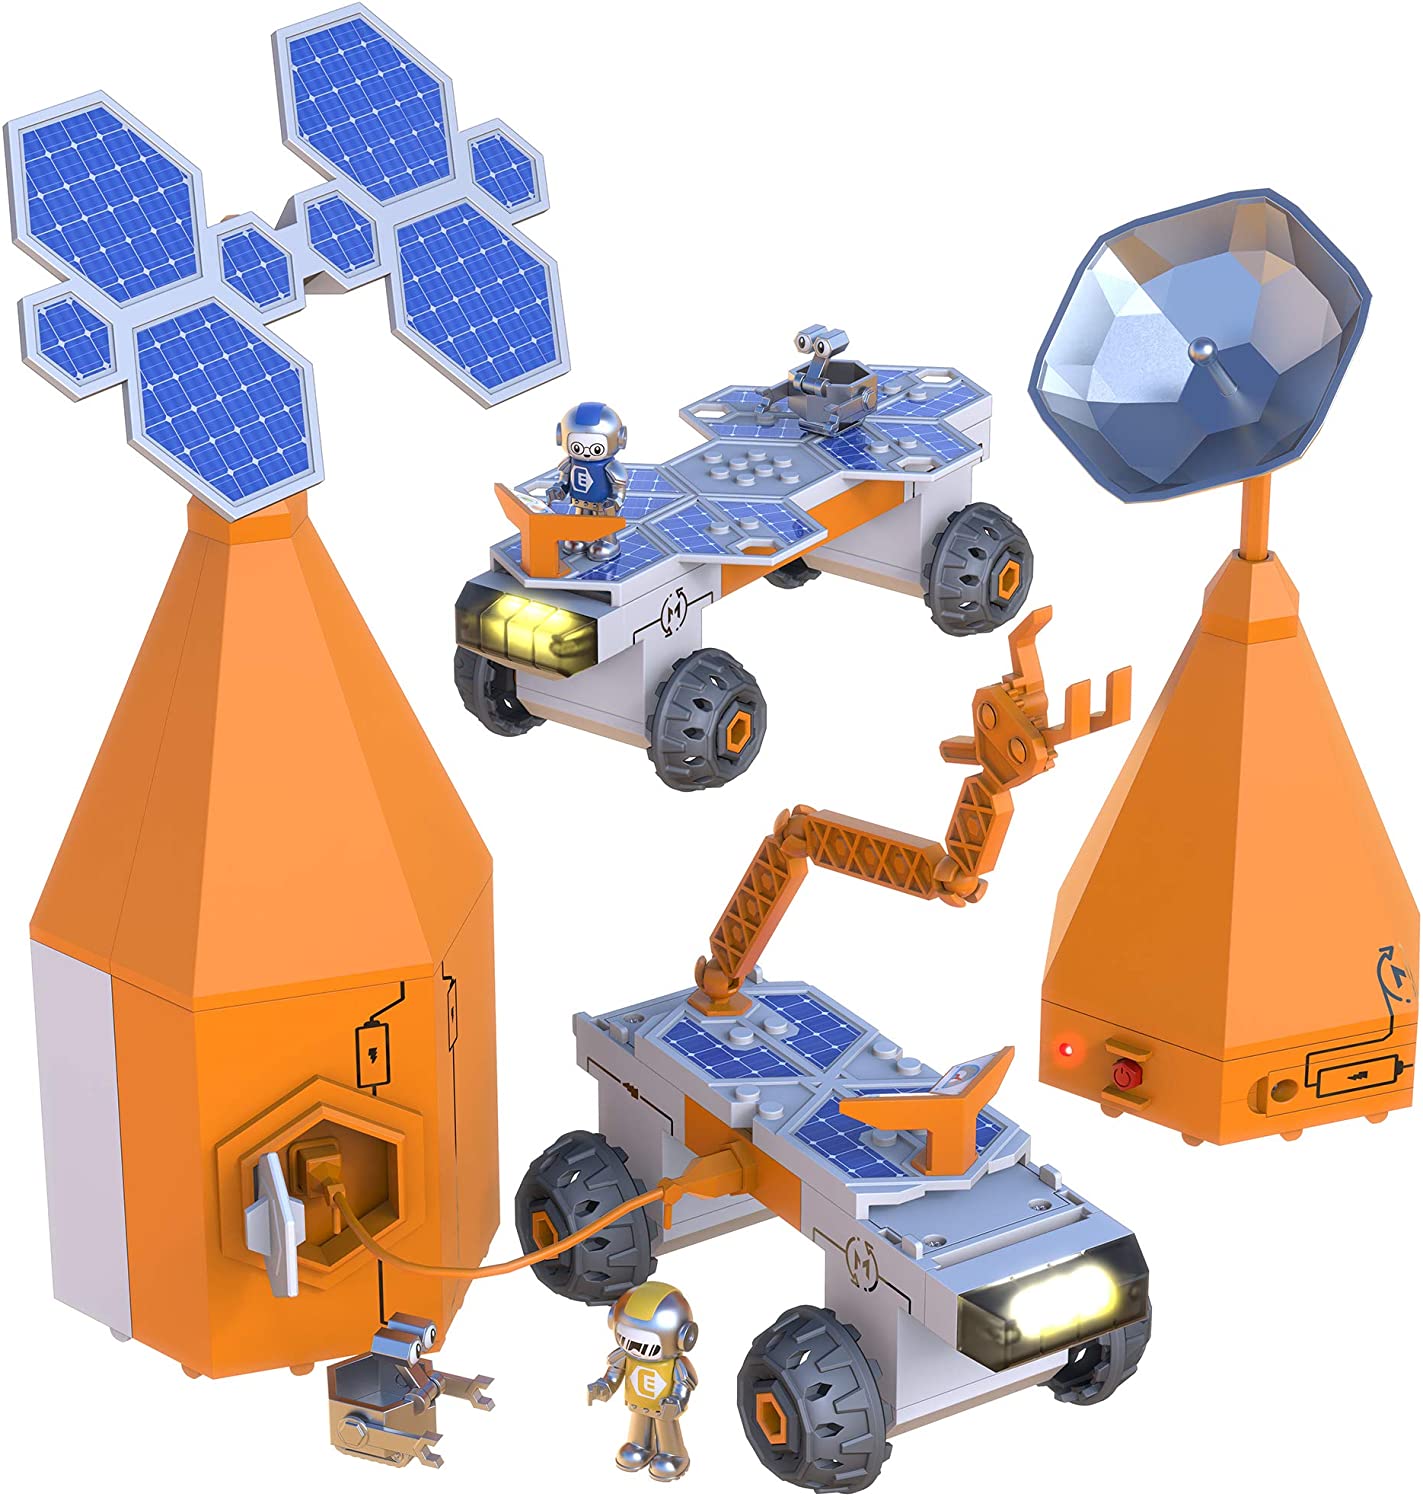 Đồ chơi STEM không gian vũ trụ robot mạch điện chuyển động Educational